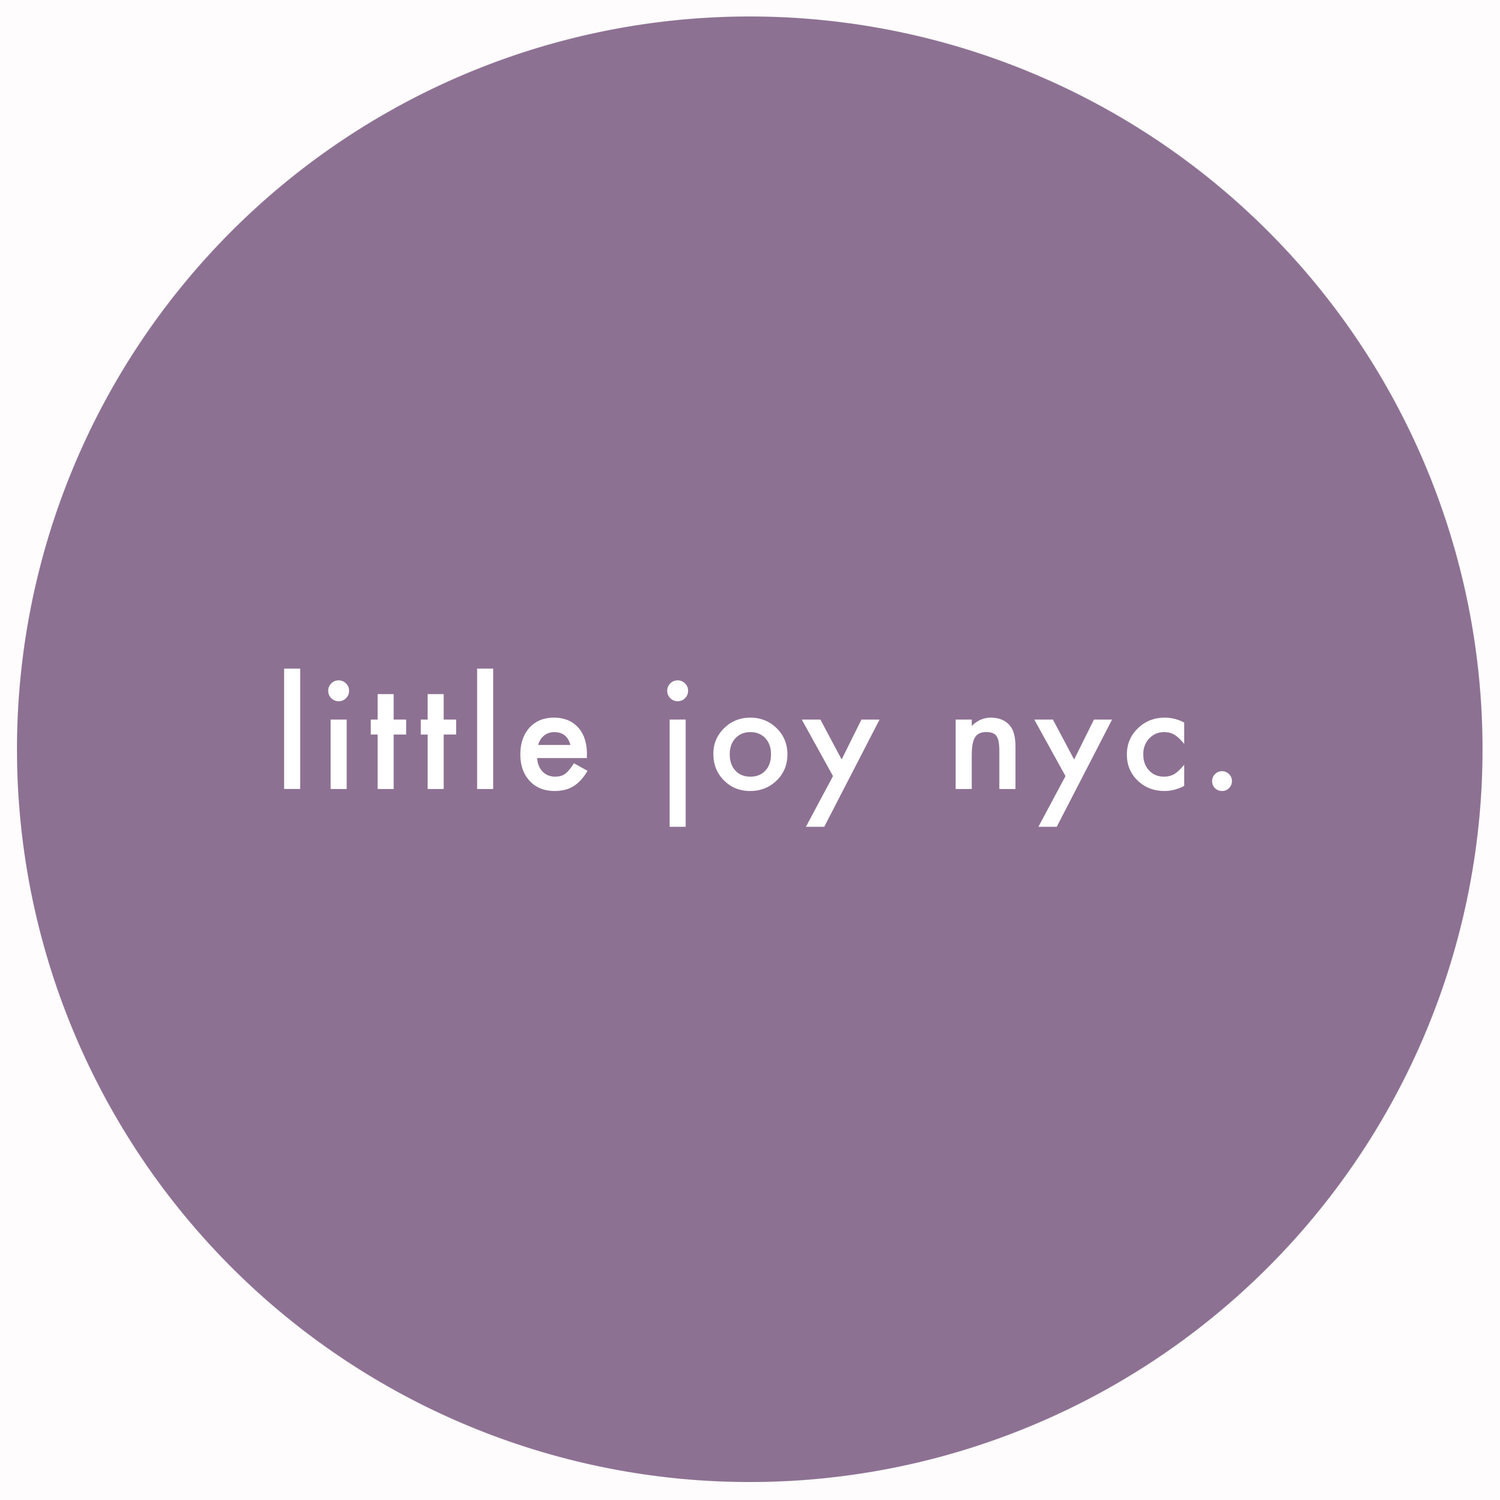 little joy nyc.